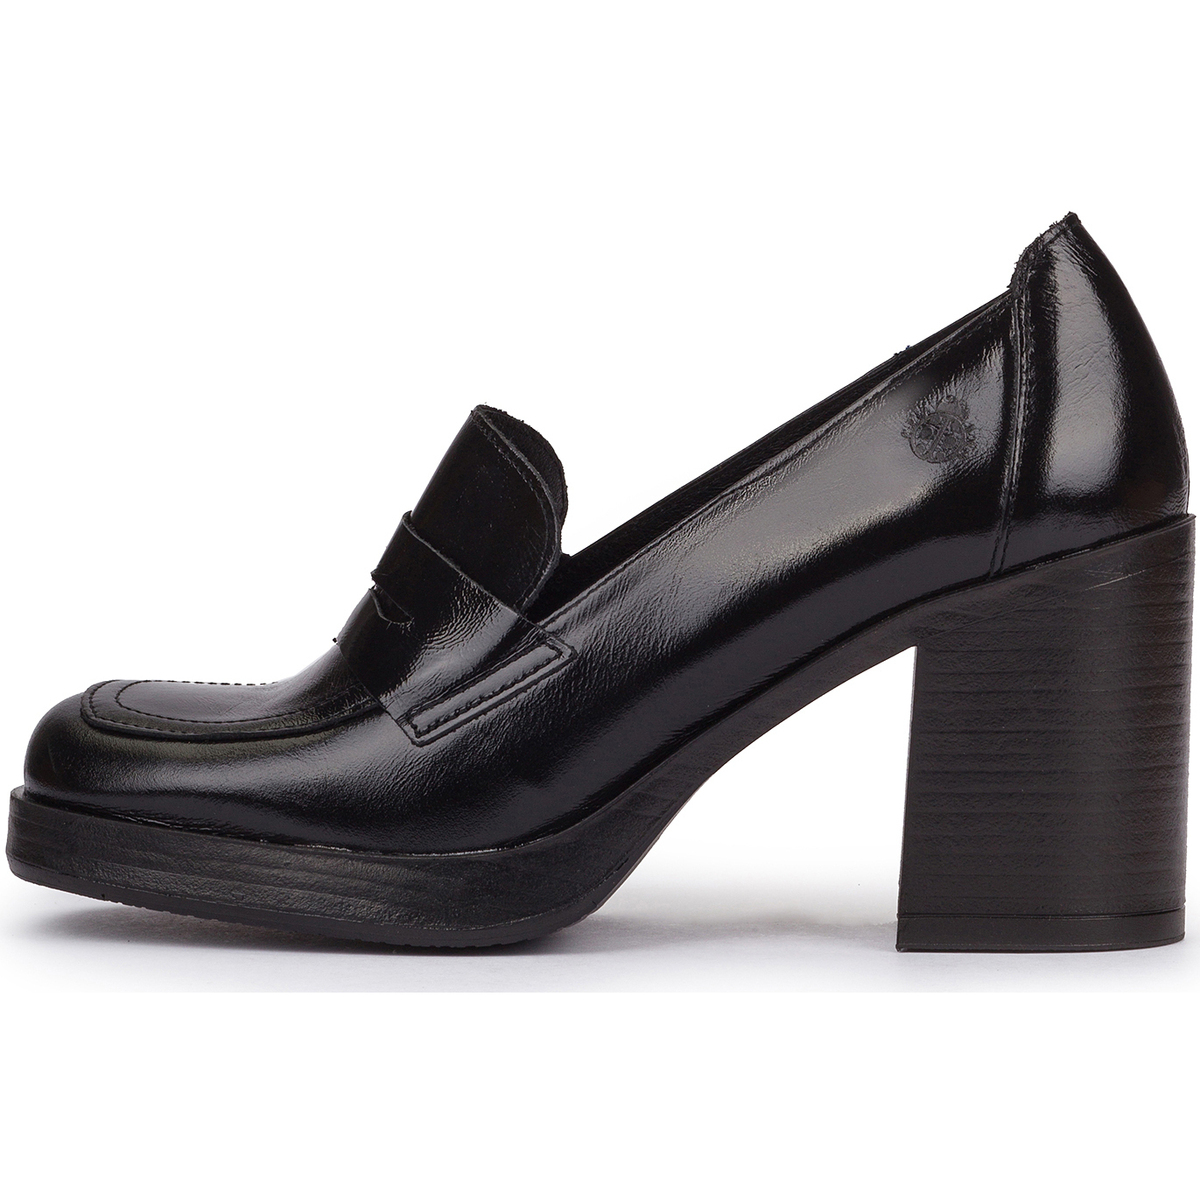 Chaussures Femme nbspTour de bassin :  KOLIN-004 Noir